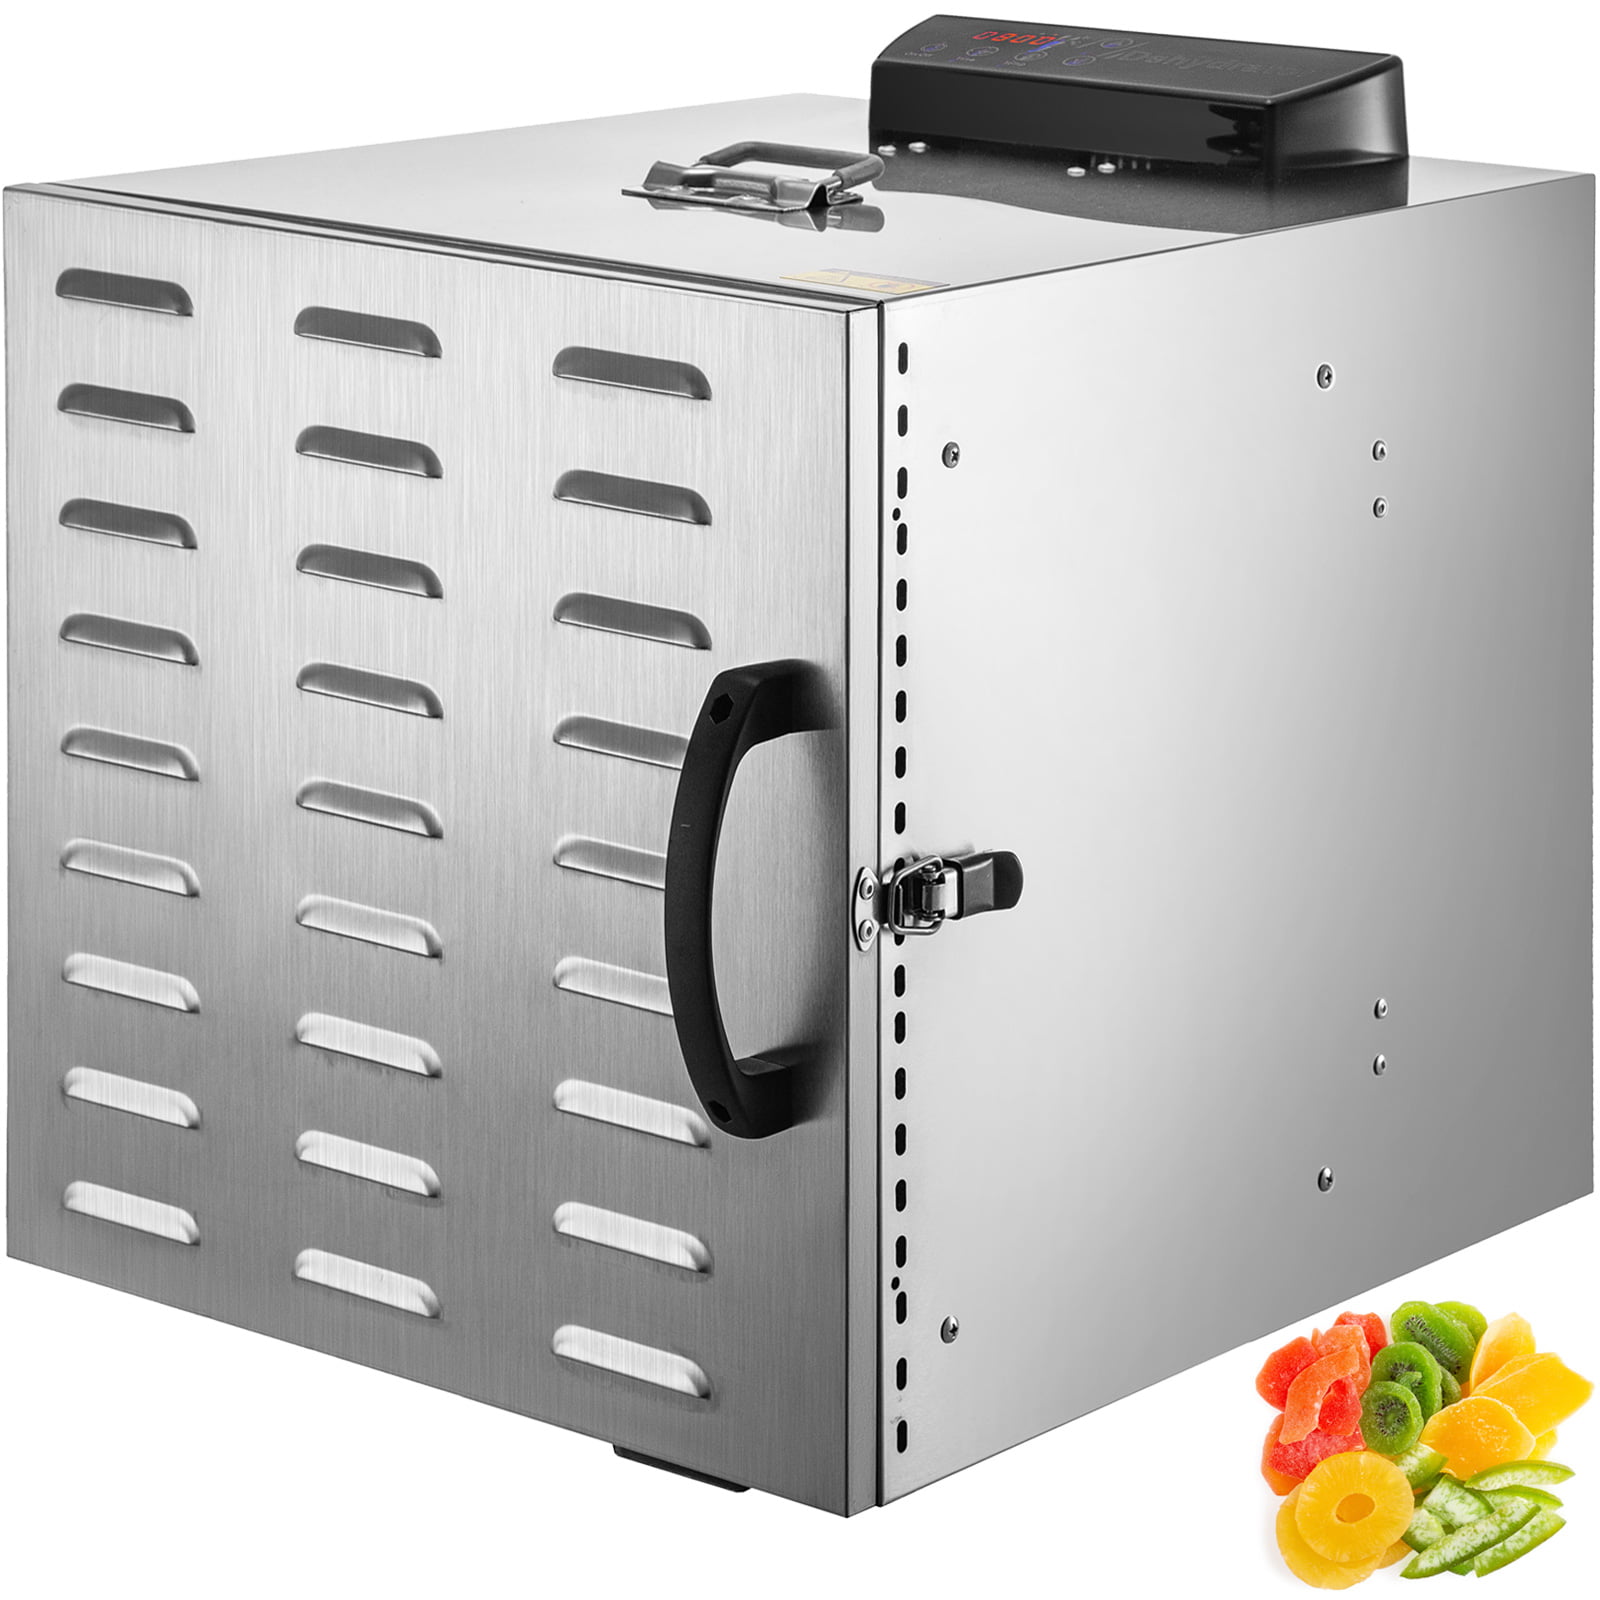 VEVOR Food Dehydrator Machine w/10 Stainless Steel Trays, 800